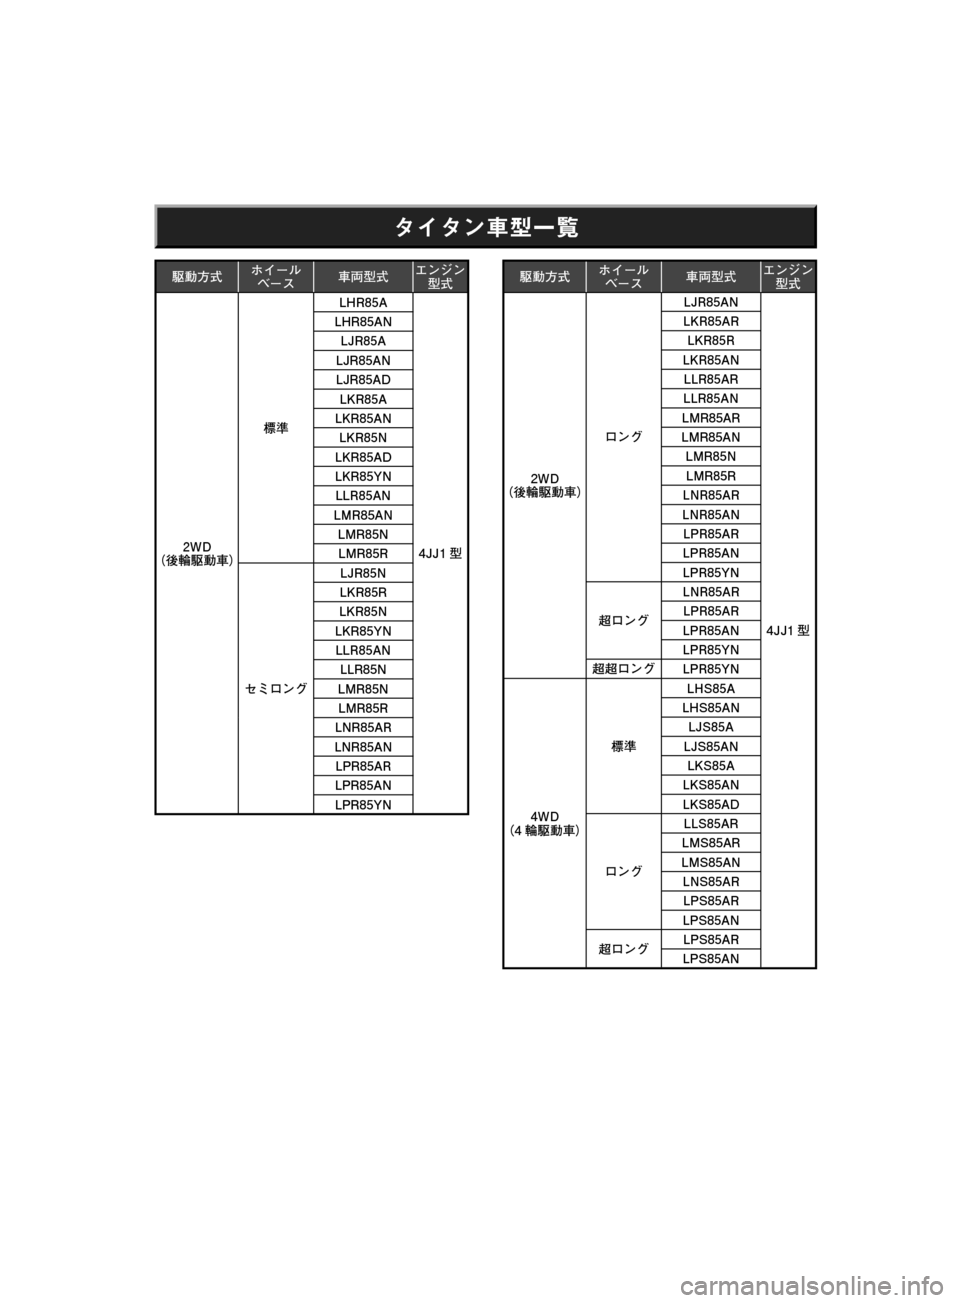 MAZDA MODEL TITAN 2013  タイタン｜取扱説明書 (in Japanese) » »ï	°a
æˆMÜ× ”ç
Õ”µ	†Ü¤ï´ï
Ü
��8�%
¢™ æˆ	£
ª	j�-�)�3���"
��+�+�  �-�)�3���"�/
�-�+�3���"
�-�+�3���"�/
�-�+�3���"